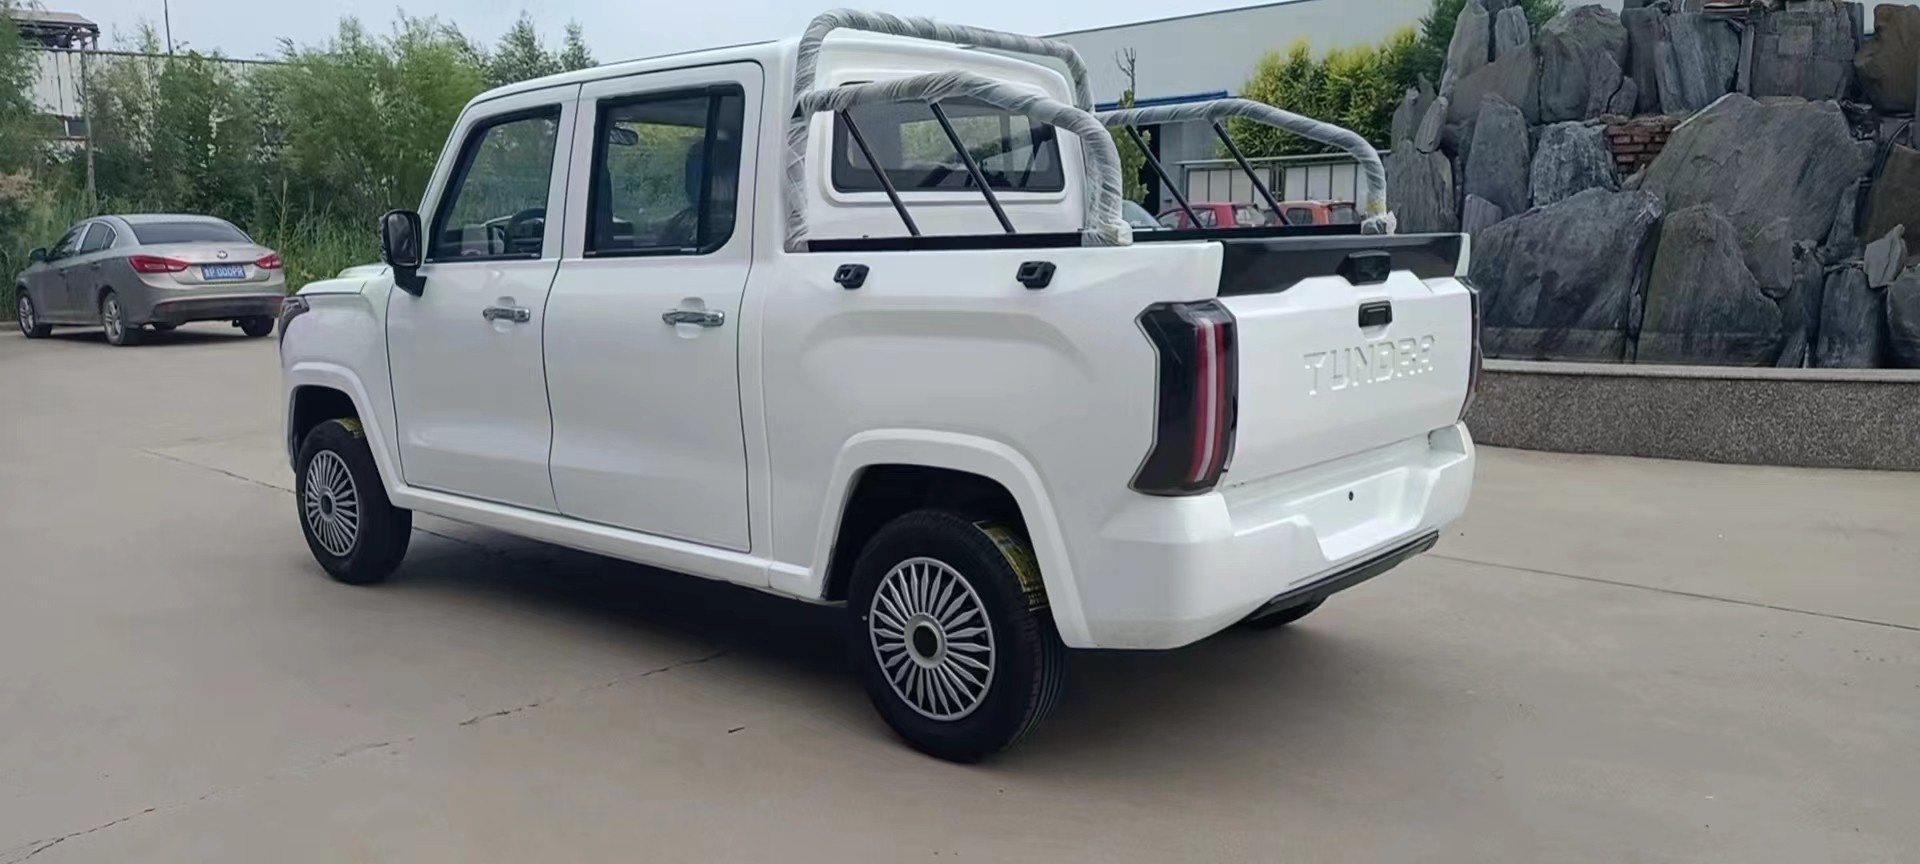 Xe bán tải giá 6.000 USD sao chép thiết kế Toyota Tundra - ảnh 2